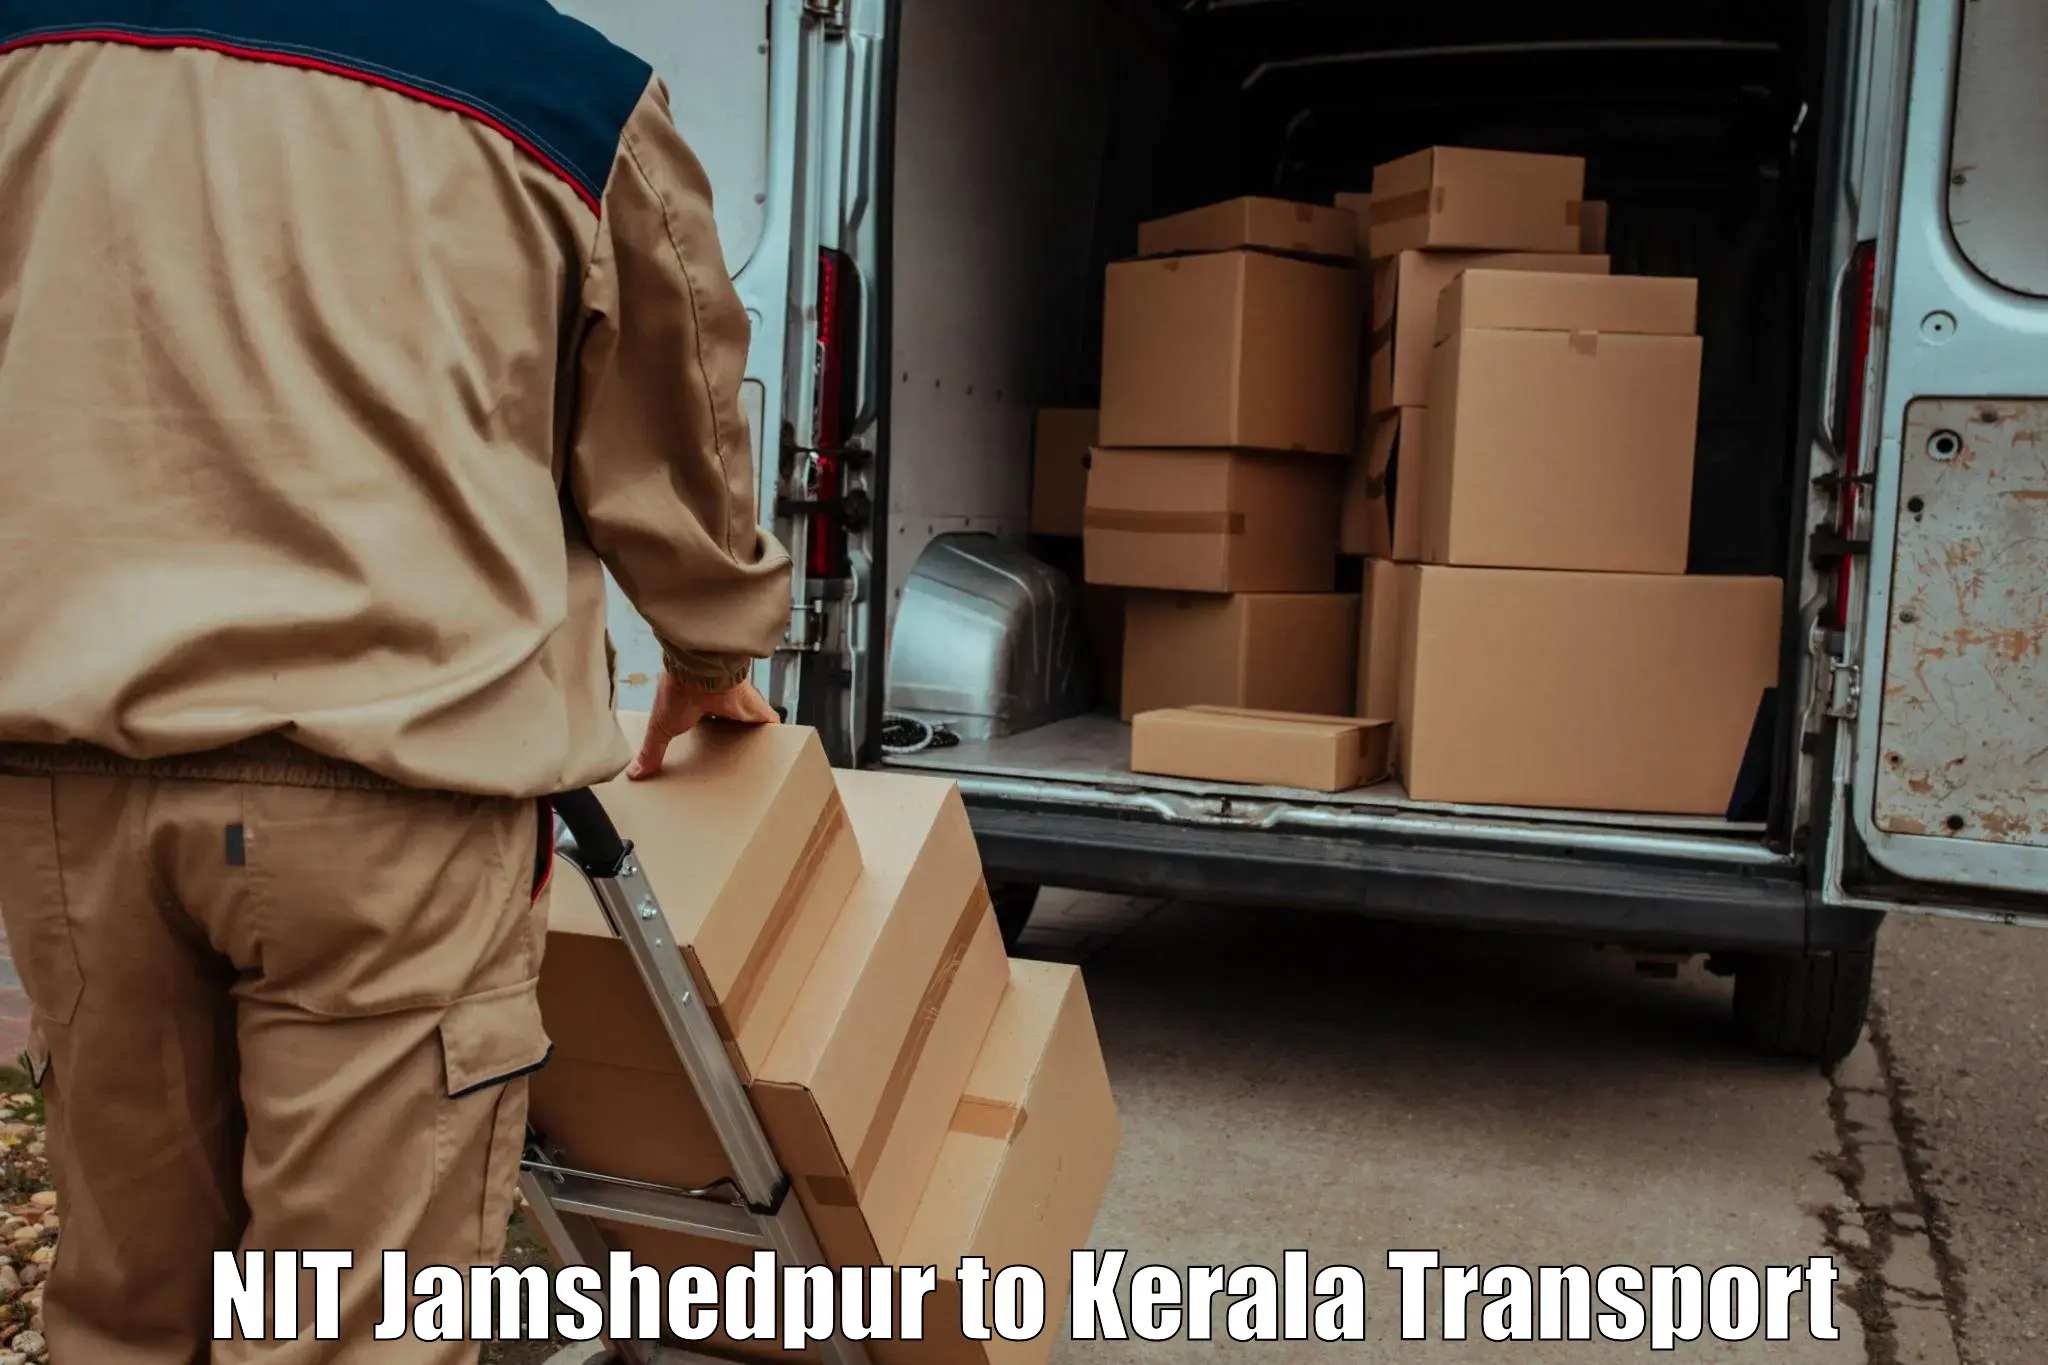 Parcel transport services NIT Jamshedpur to Kerala